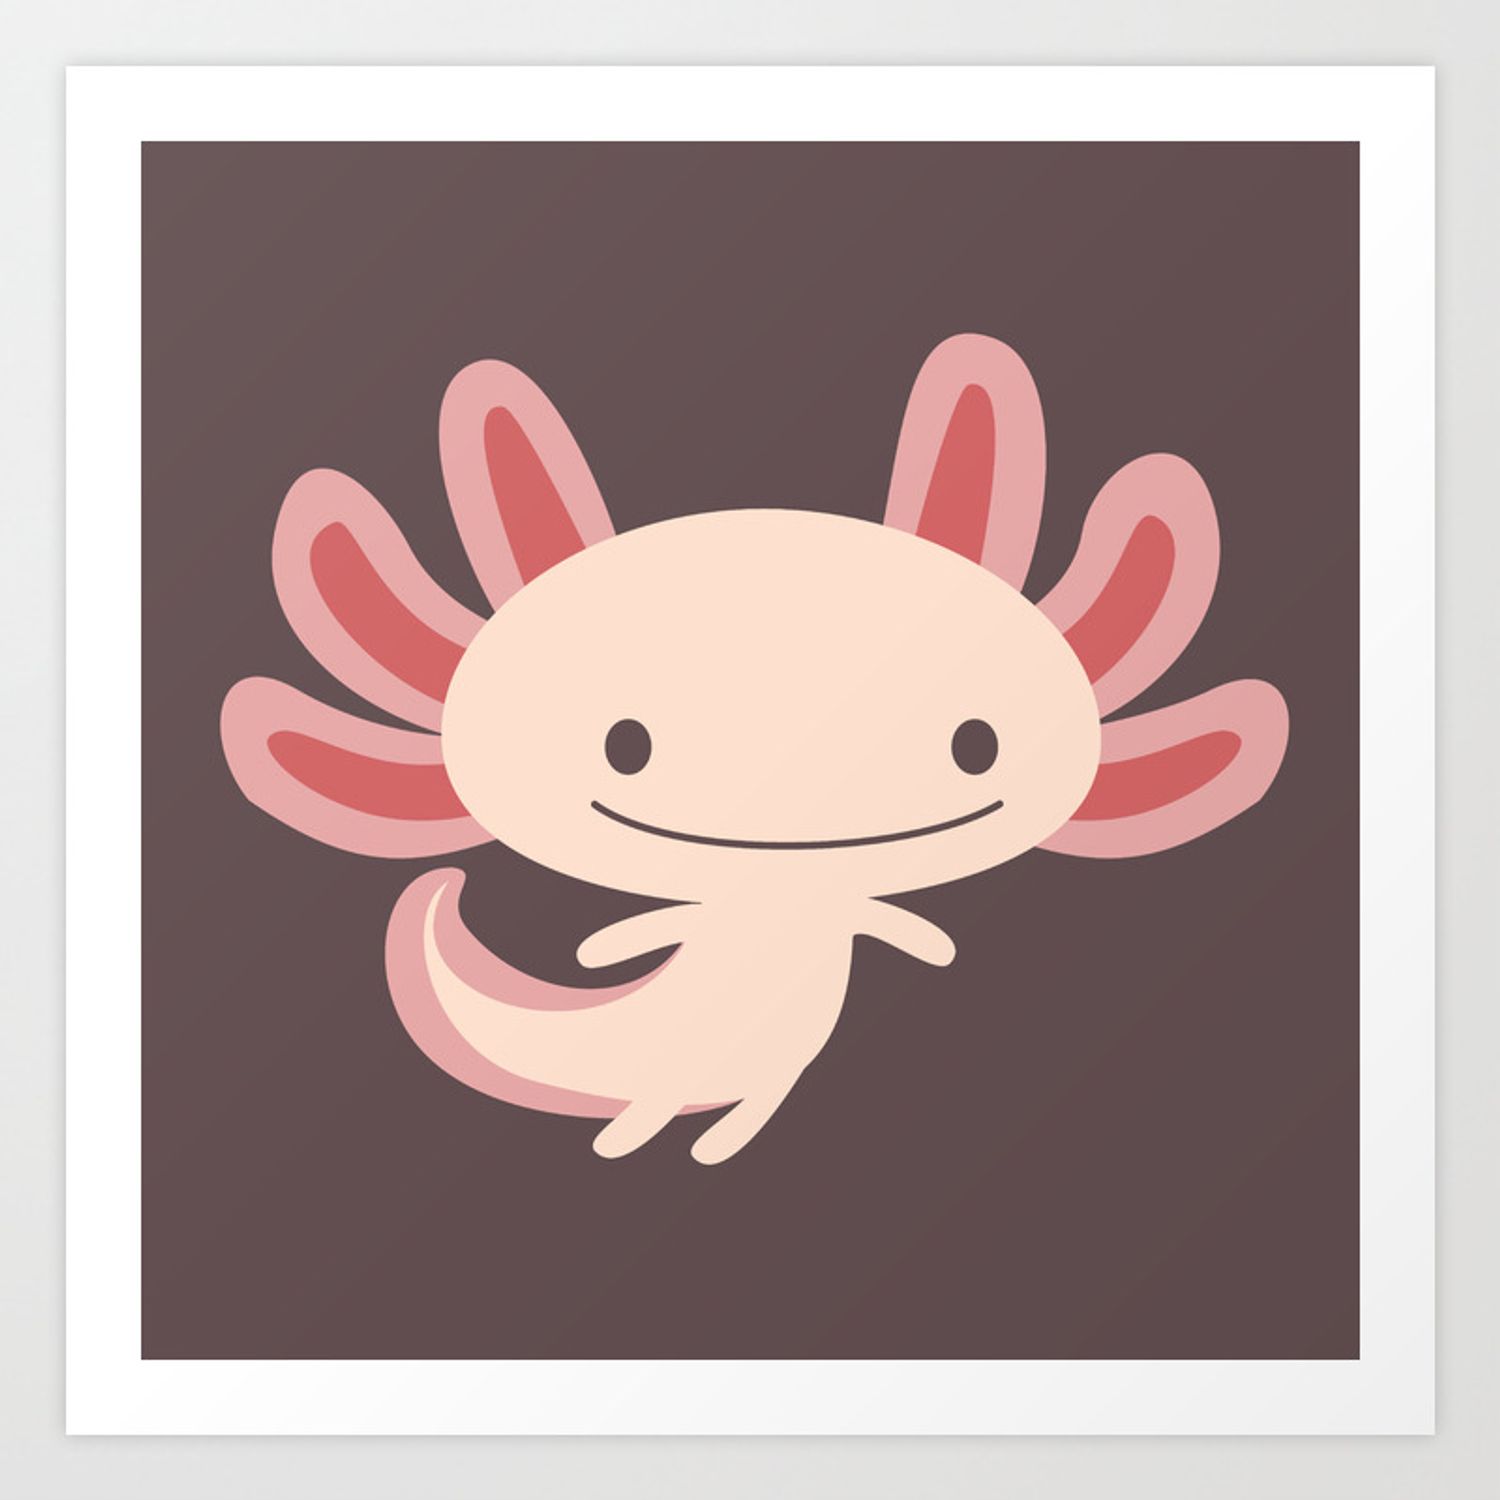 Adorable Axolotls Wallpapers - Wallpaper Cave